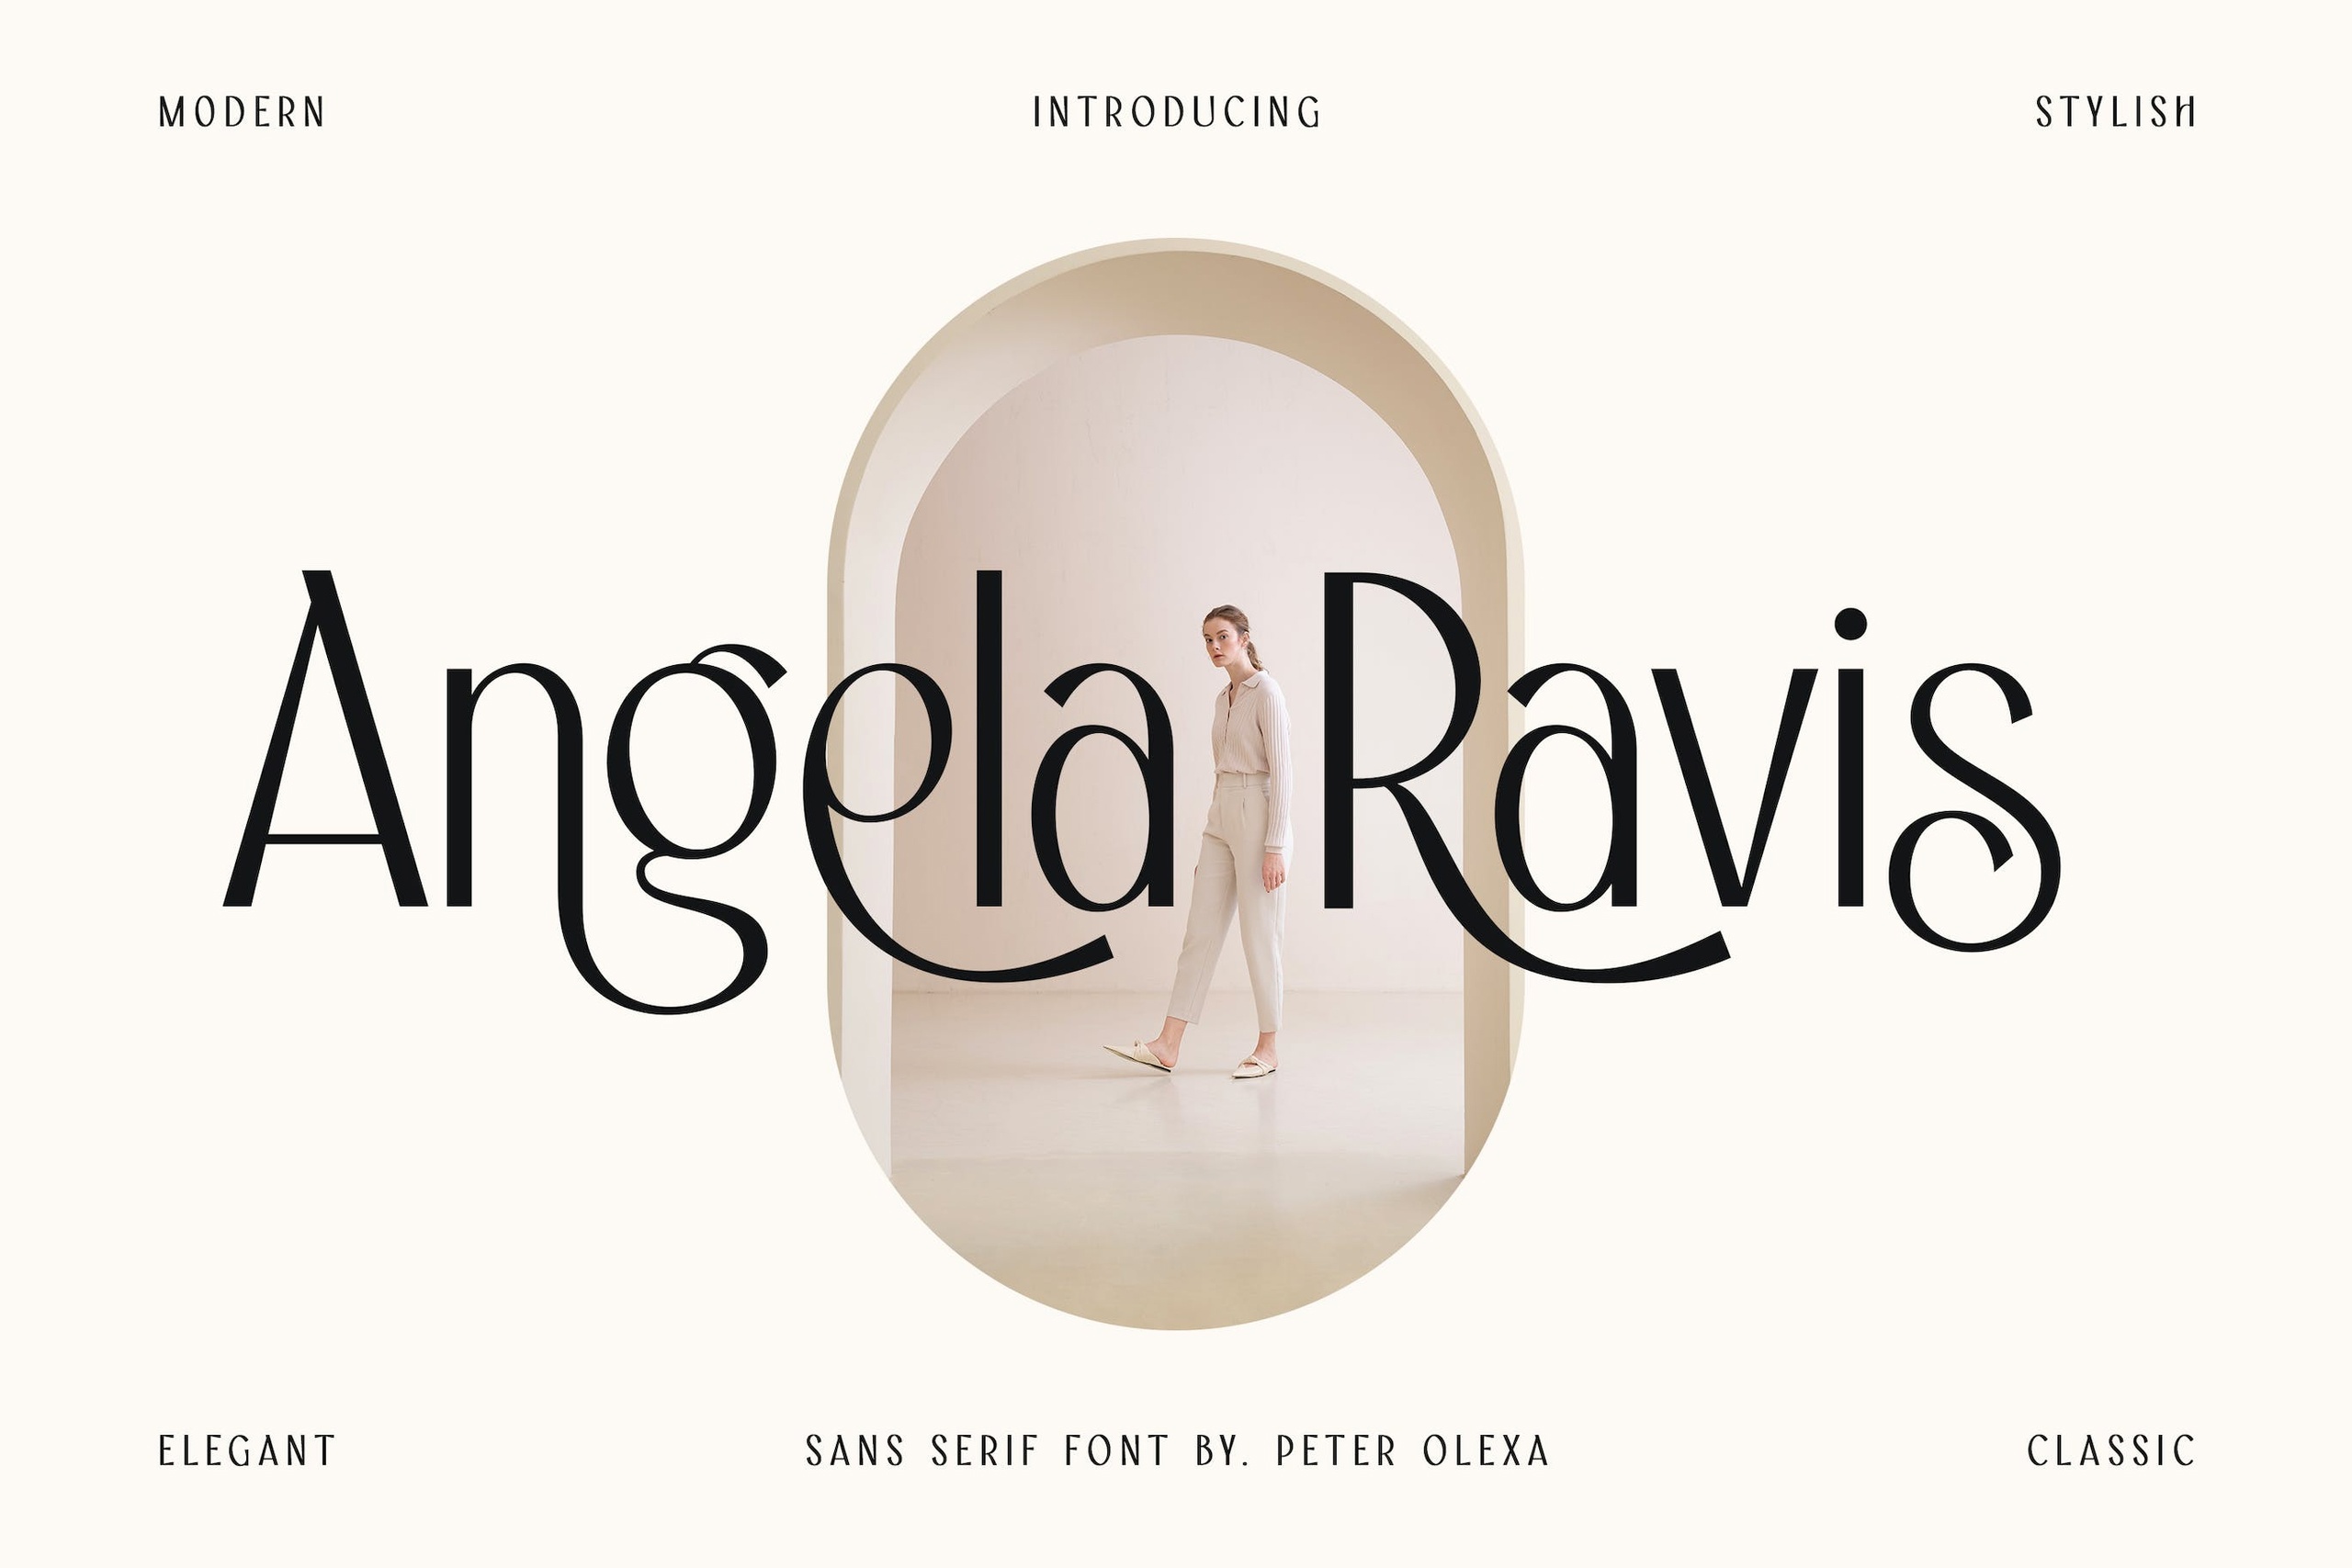 Angela Ravis